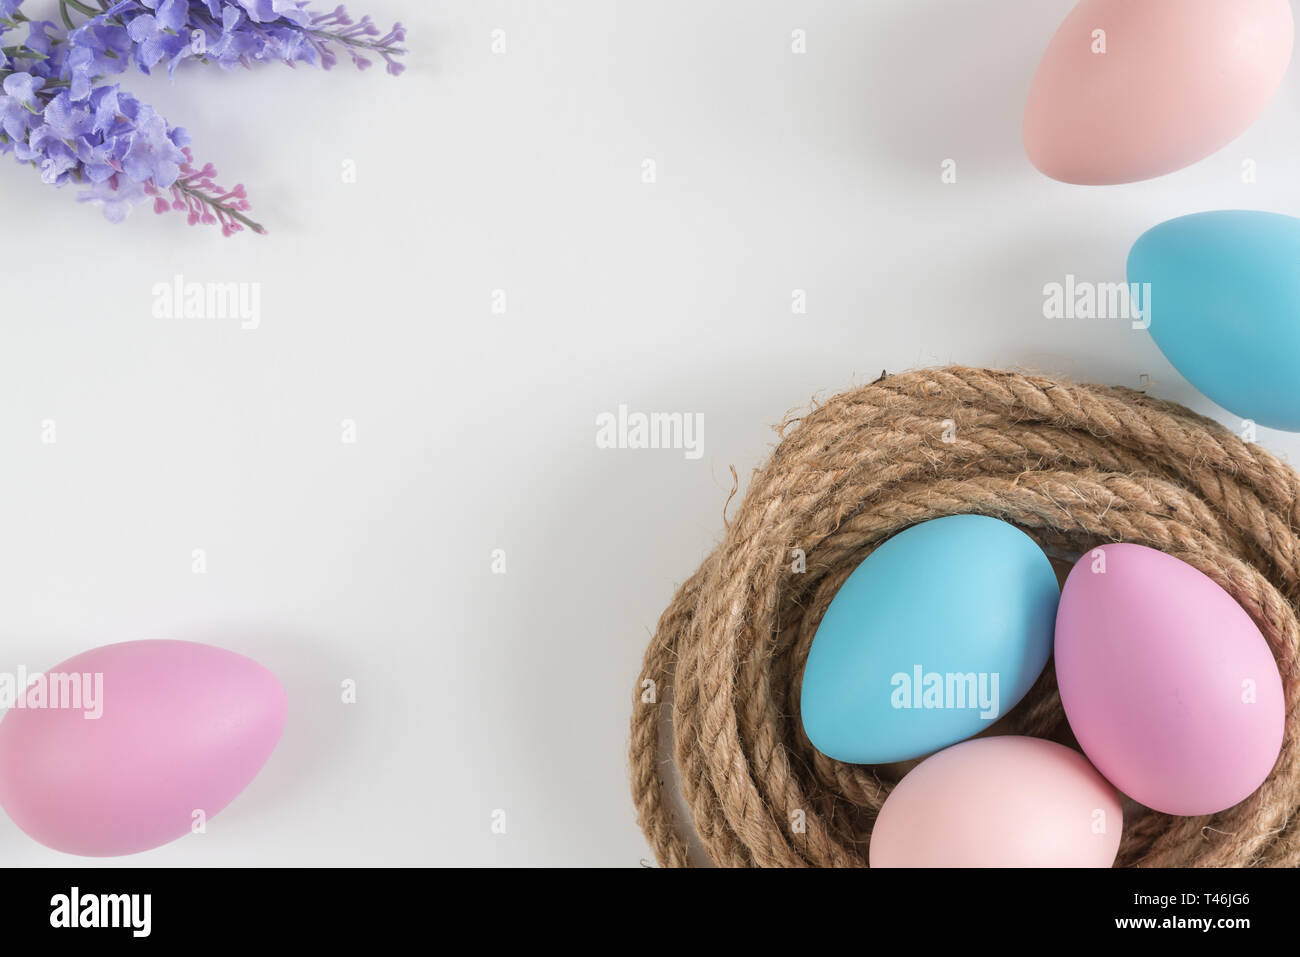 Azul pastel, rosa y púrpura huevos en nido con flores de lavanda sobre fondo blanco. Foto de stock